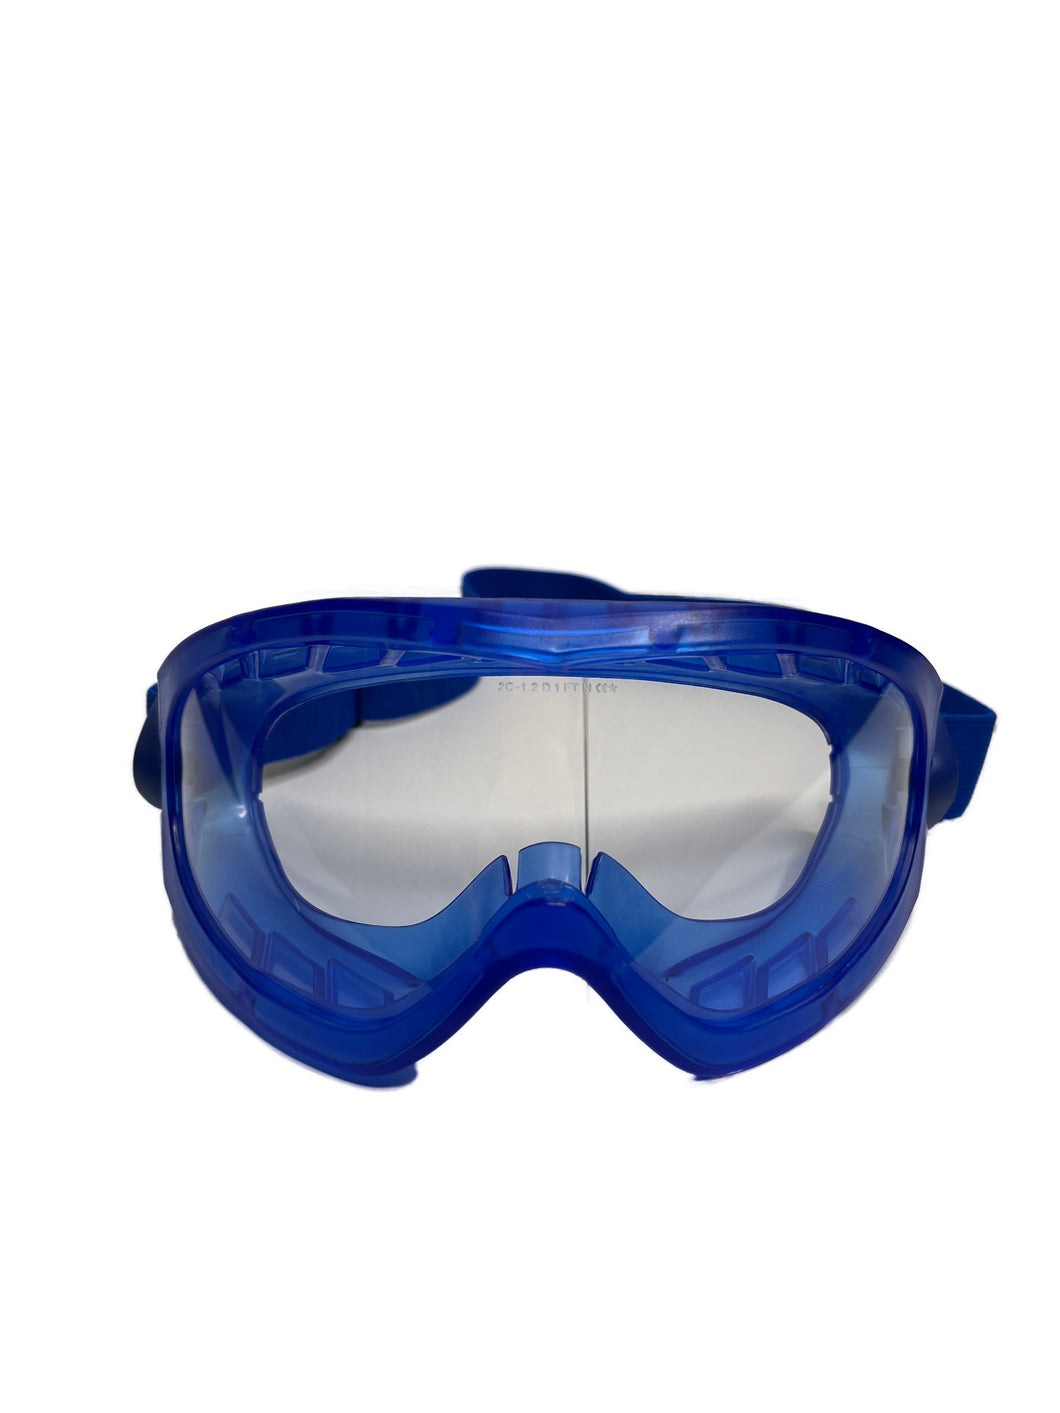 Schutzbrille, speziell zum Schutz vor Chemikalien, Dräger